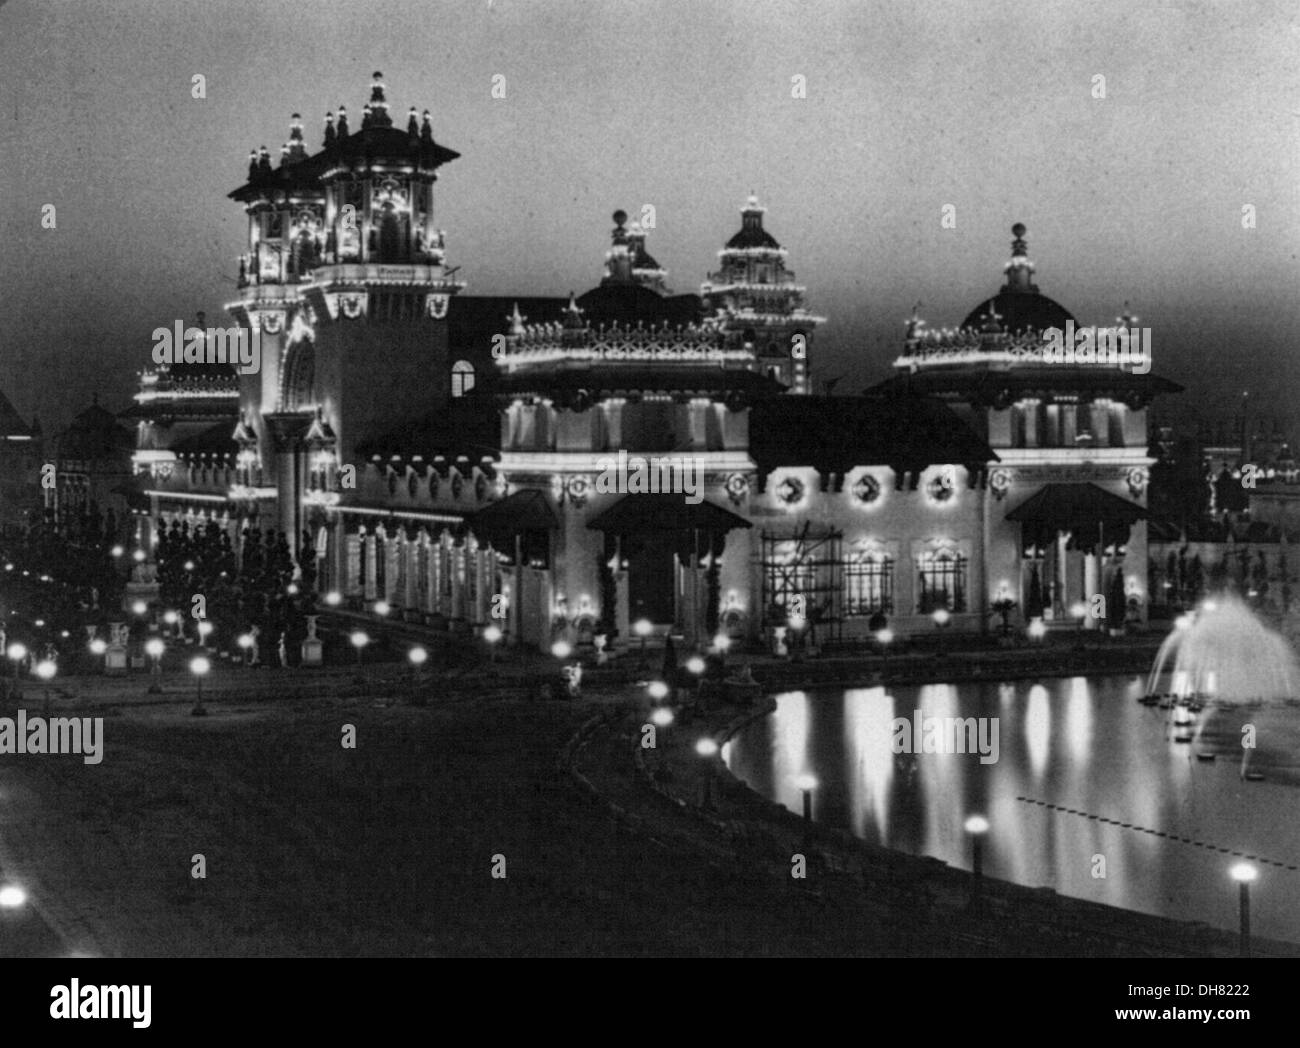 Strom-Gebäude - Nachtansicht auf der Pan-American Exposition, Buffalo, N.Y., 1901. Stockfoto